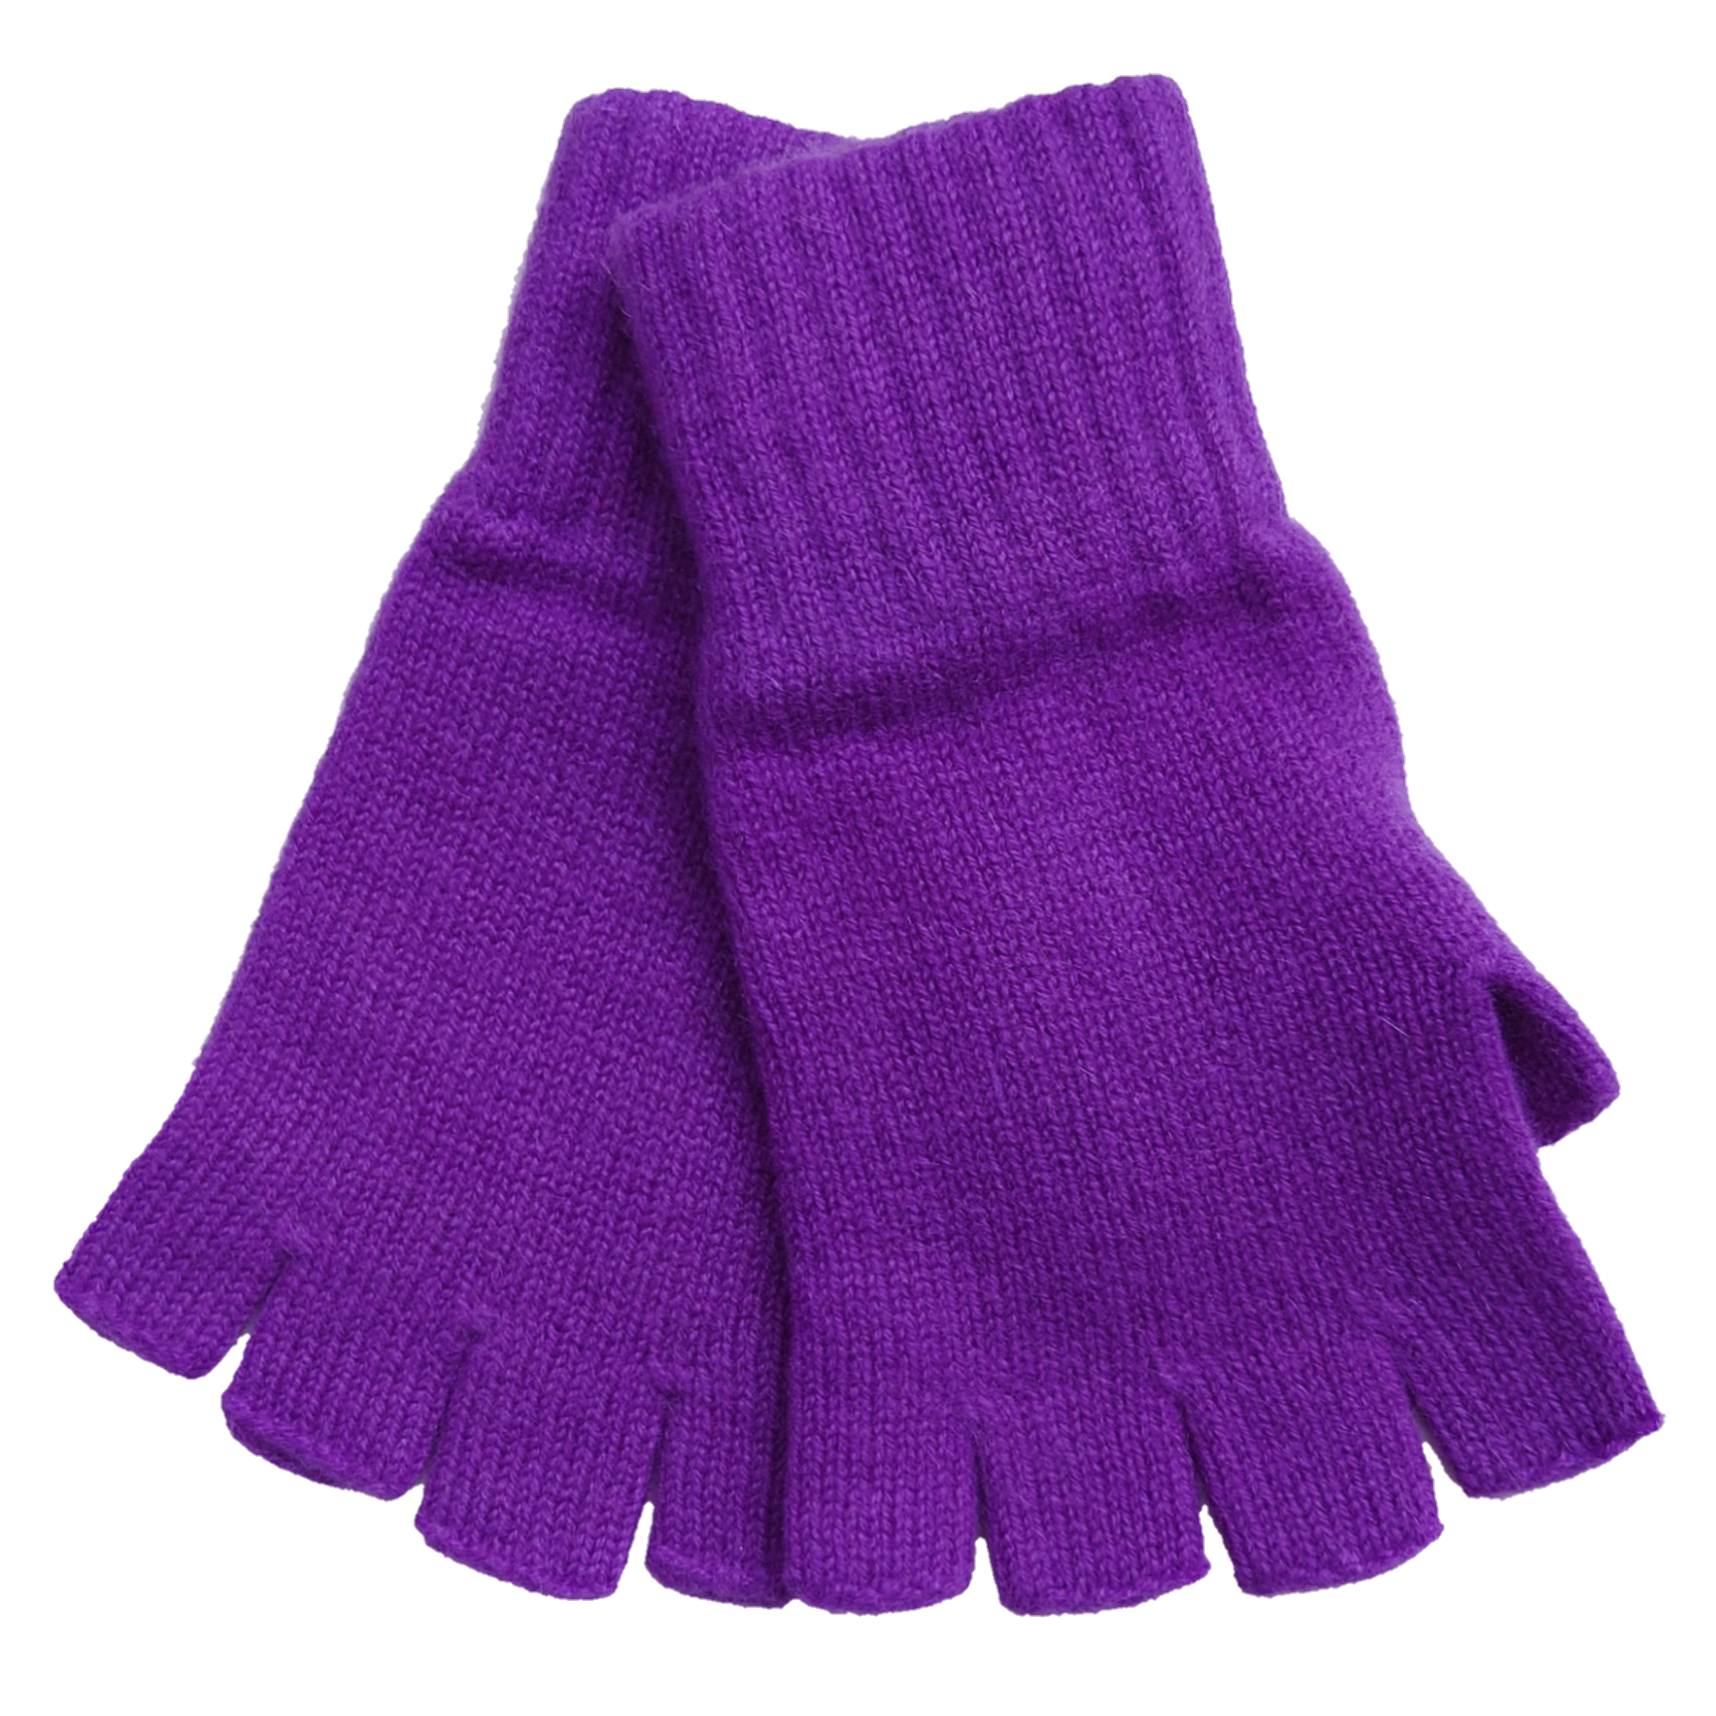 Scottish Cashmere Fingerless Gloves - TCG London